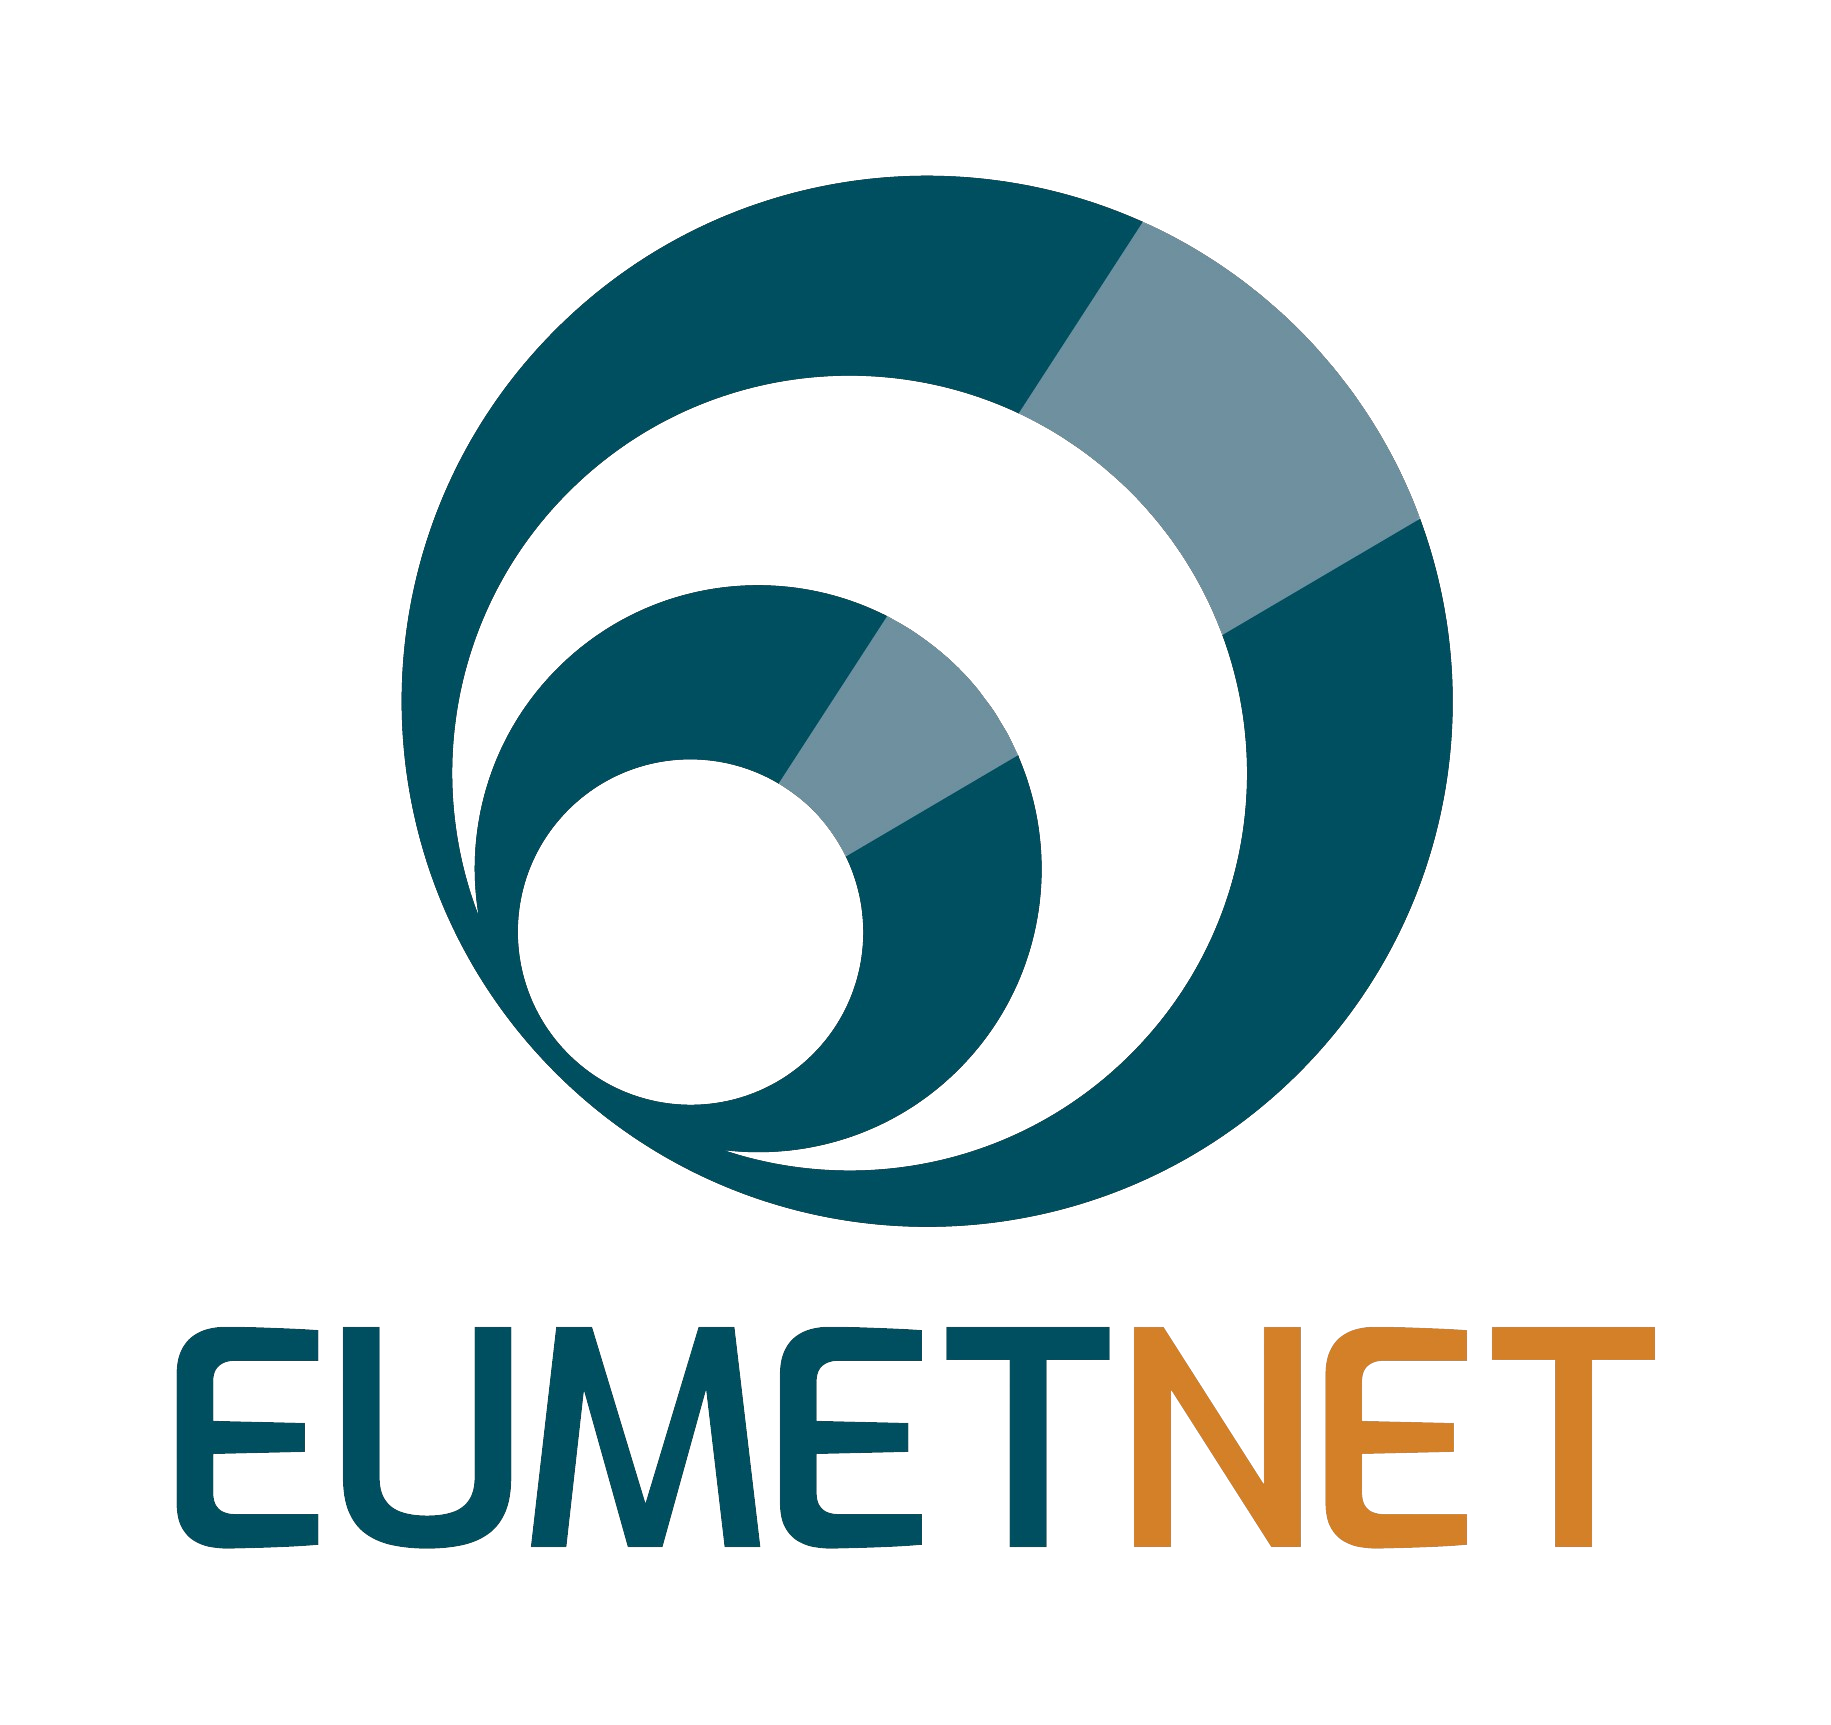 Eumetnet